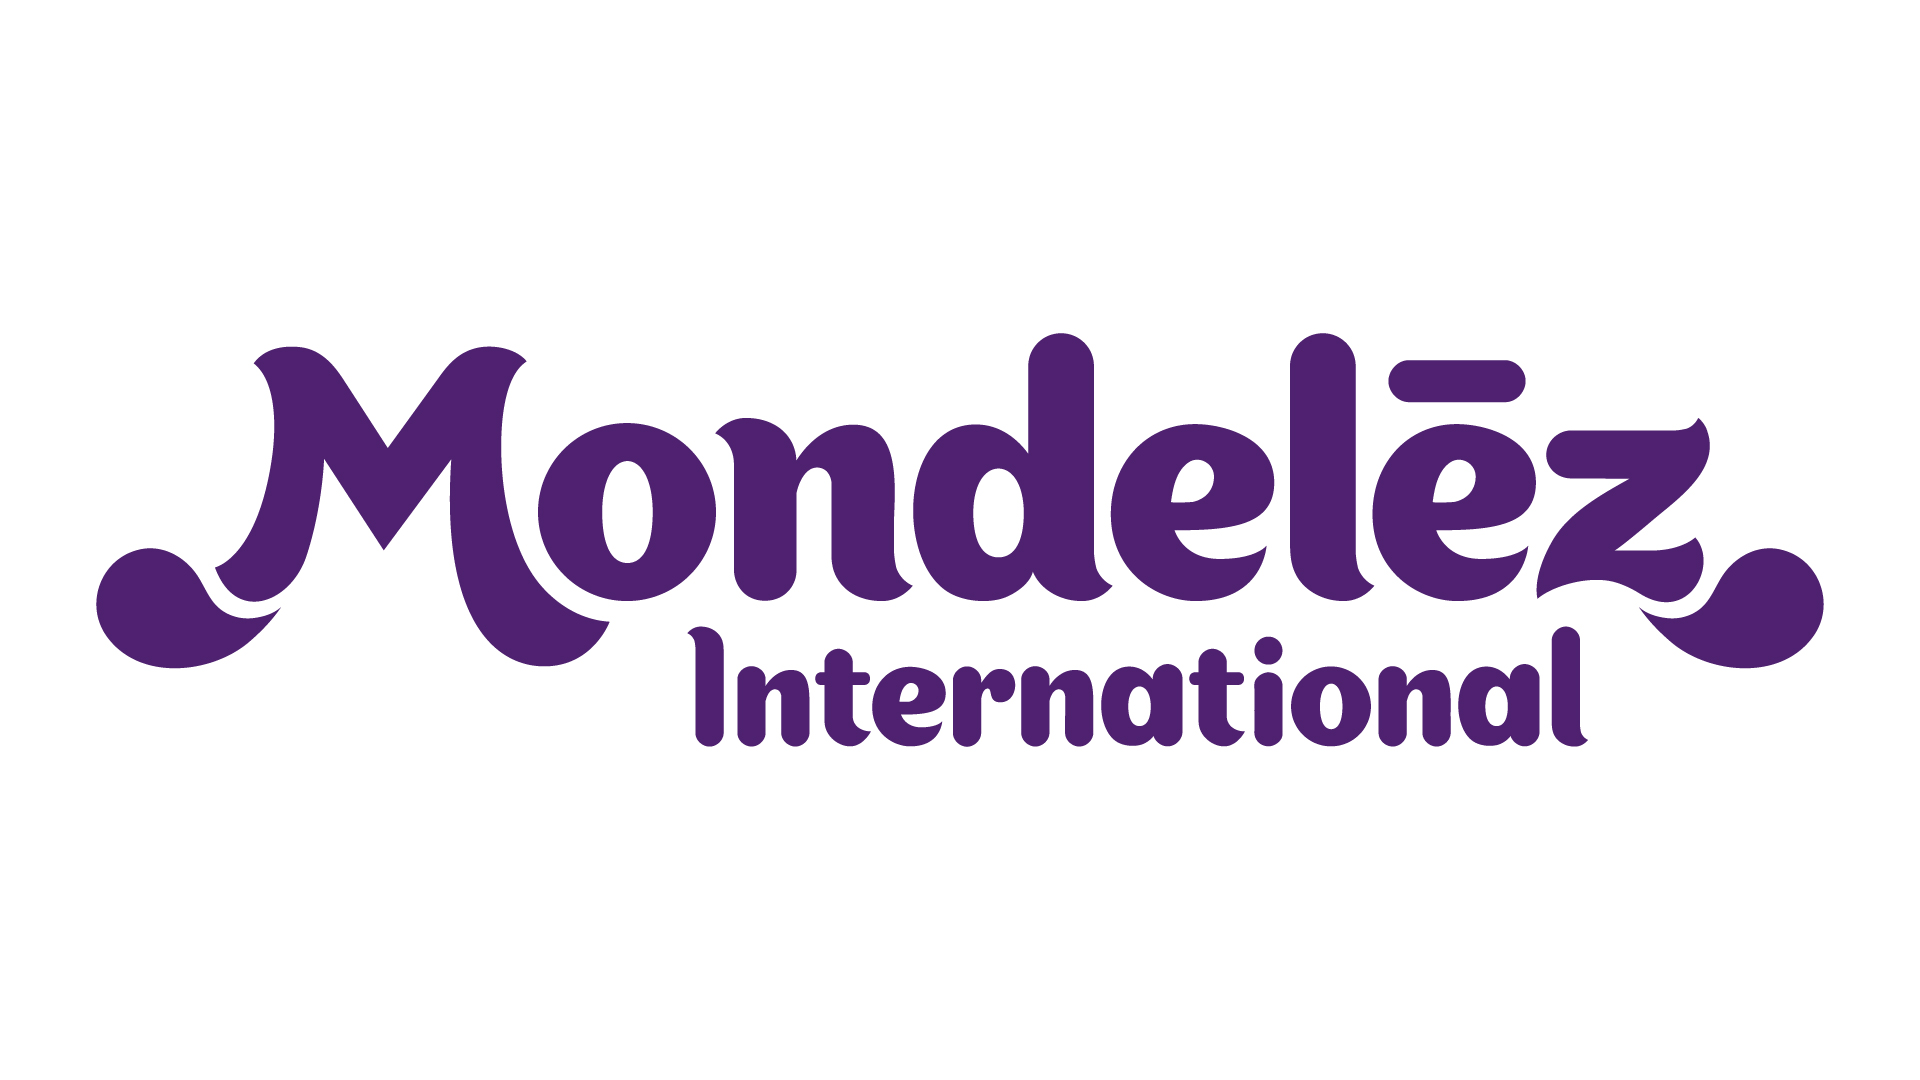 PH02 Mondelez Philippines Inc. company logo